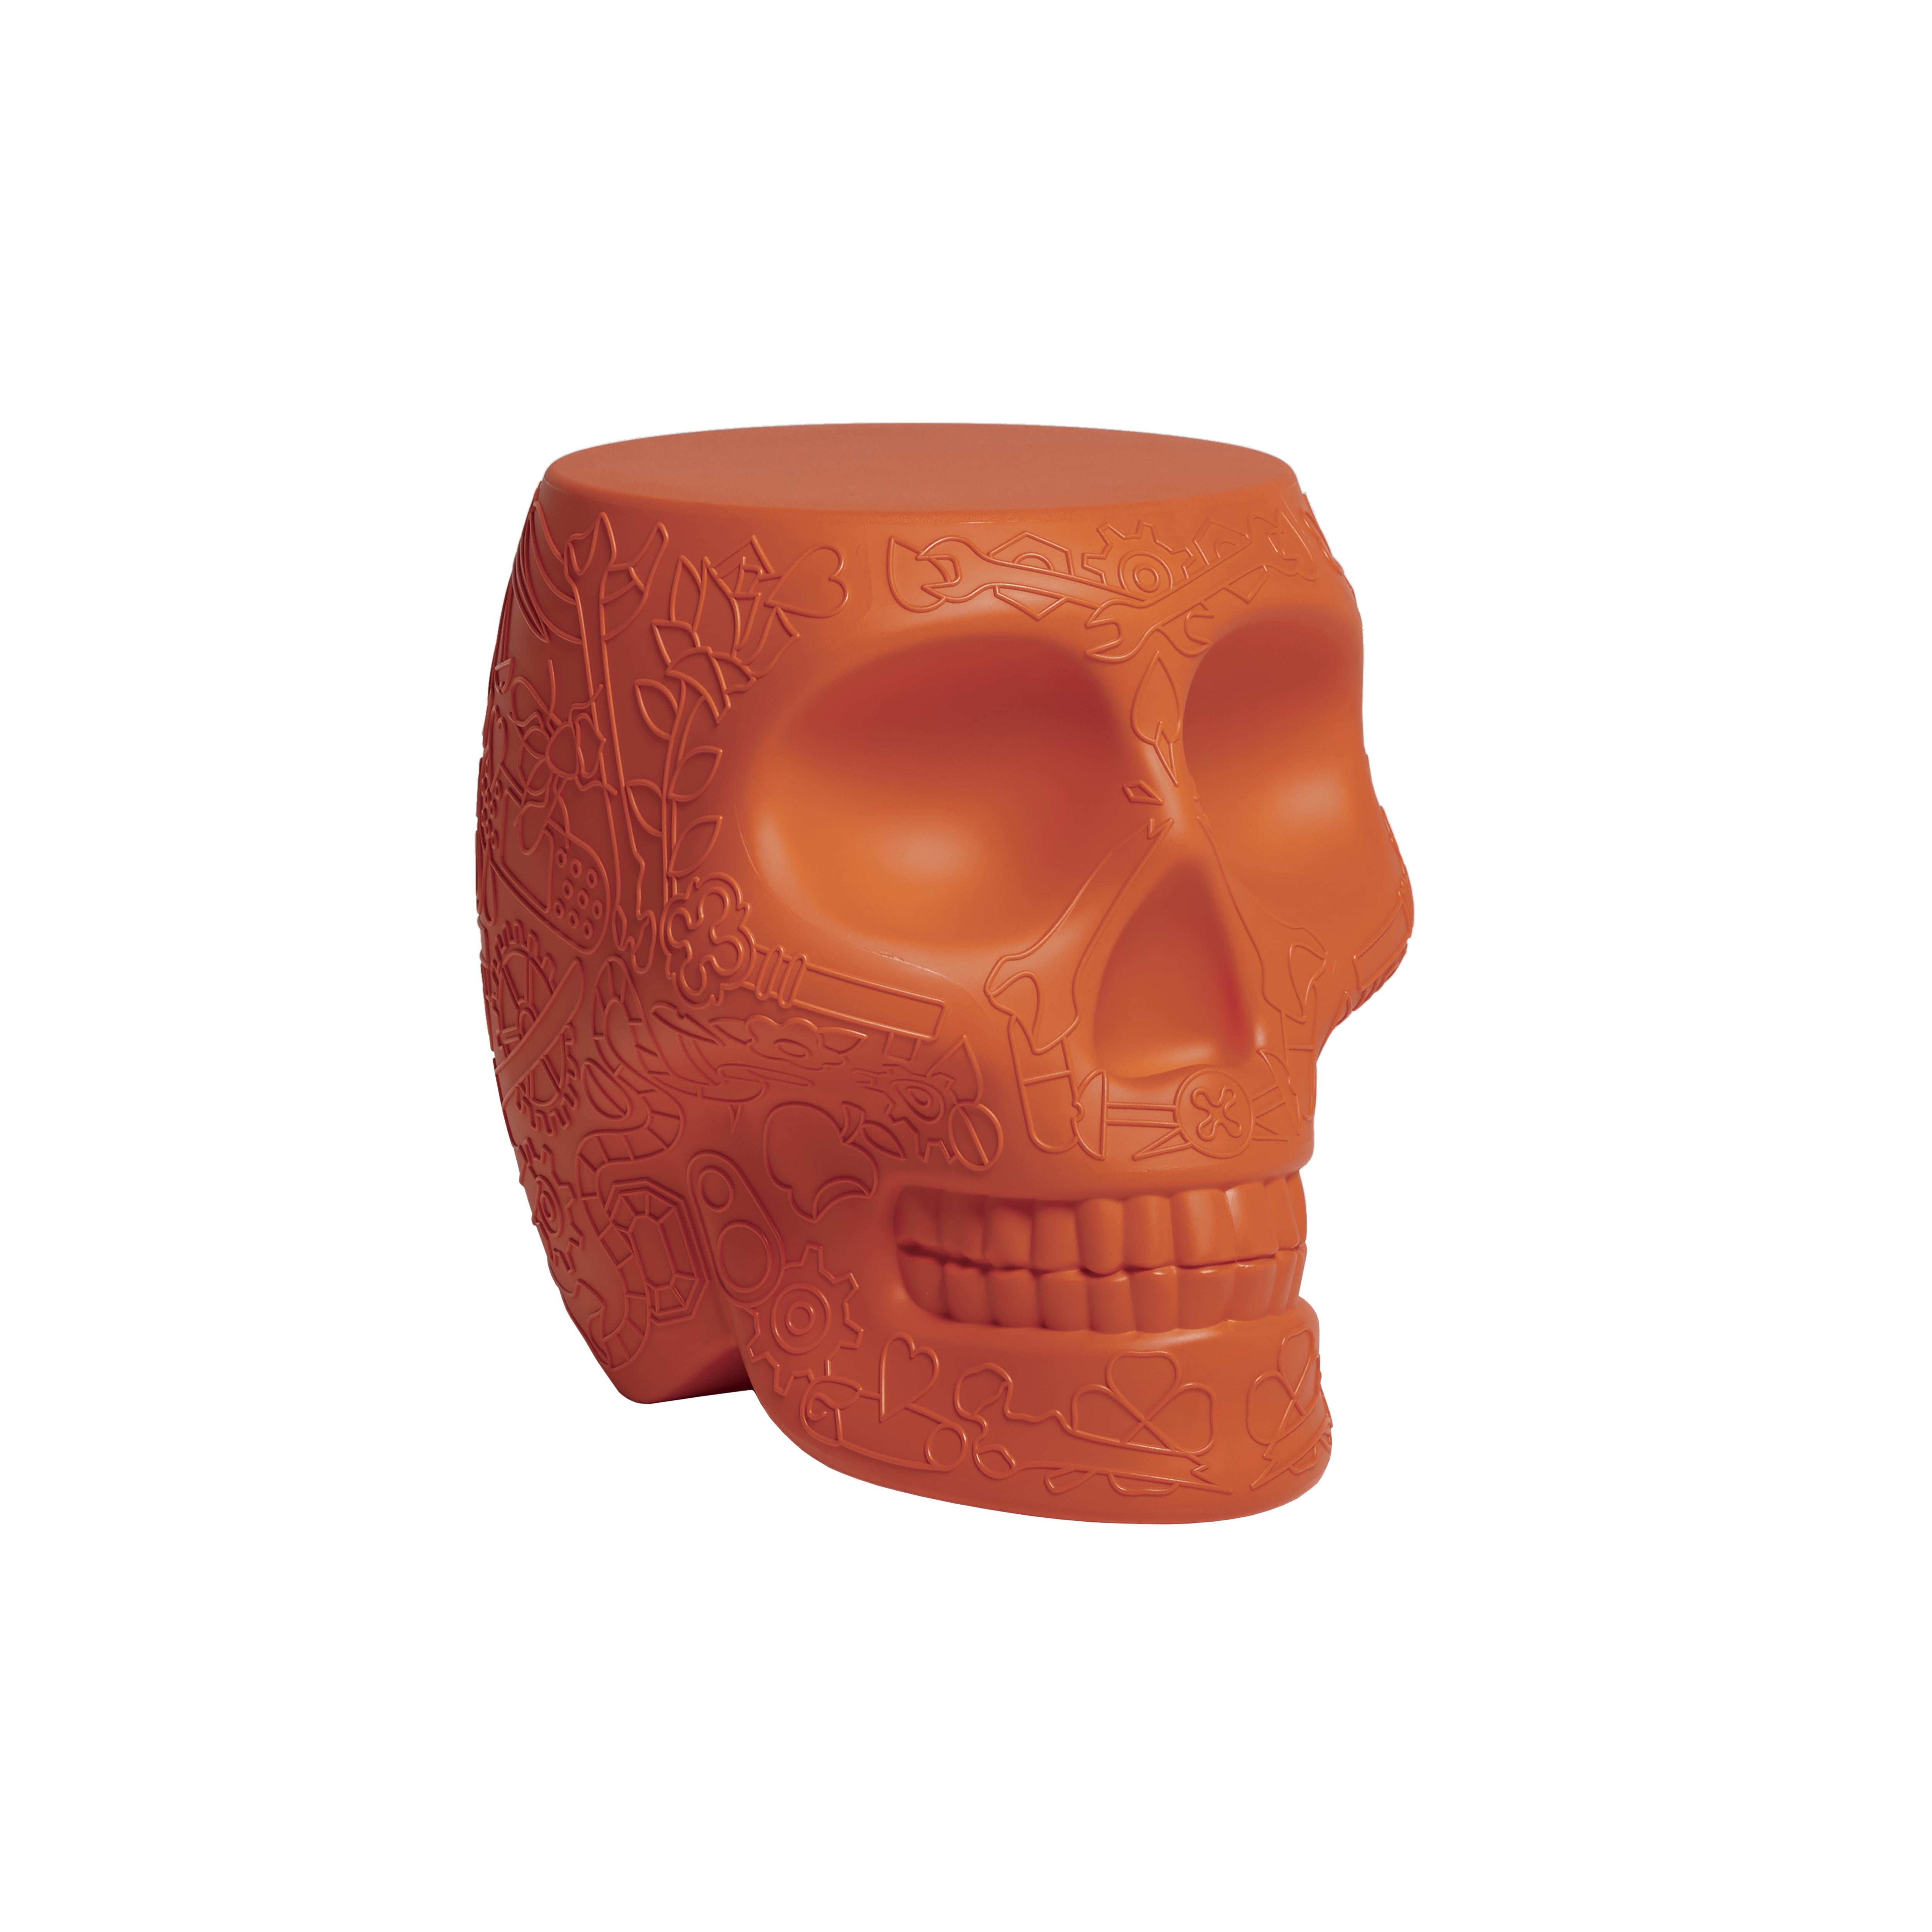 En vente : Orange (Terracotta) Table d'appoint mexicaine moderne Calavera Skull en terre cuite noire, verte ou blanche 2